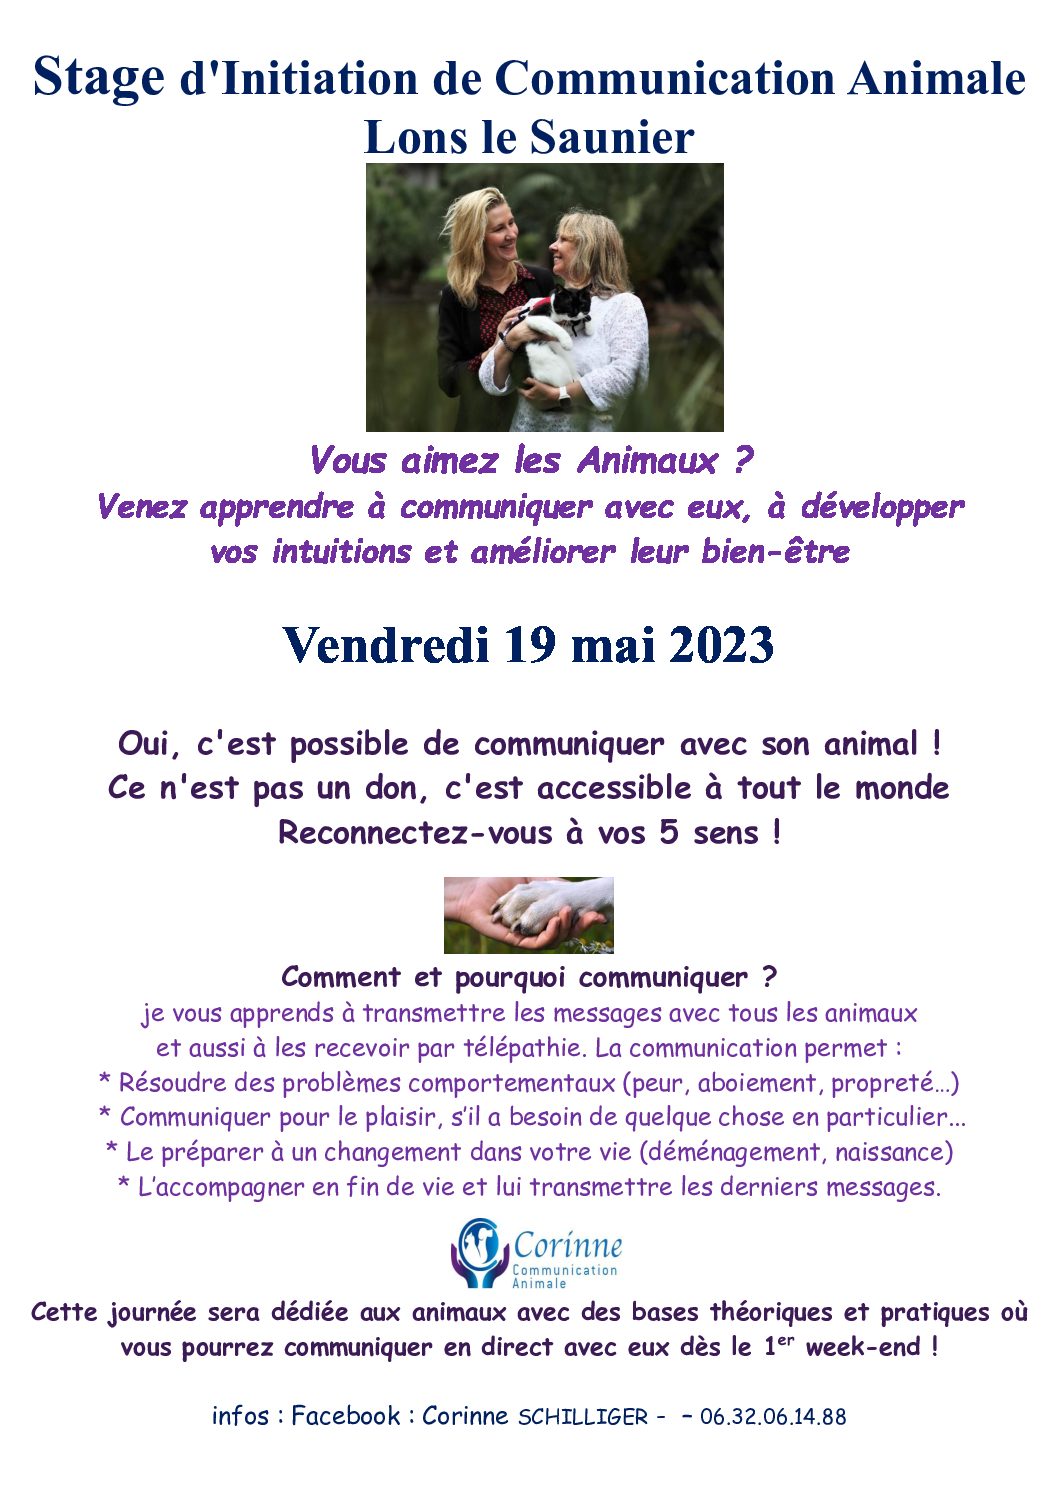 Stage d’Initiation de Communication Animale 19 mai à Lons-le-Saunier